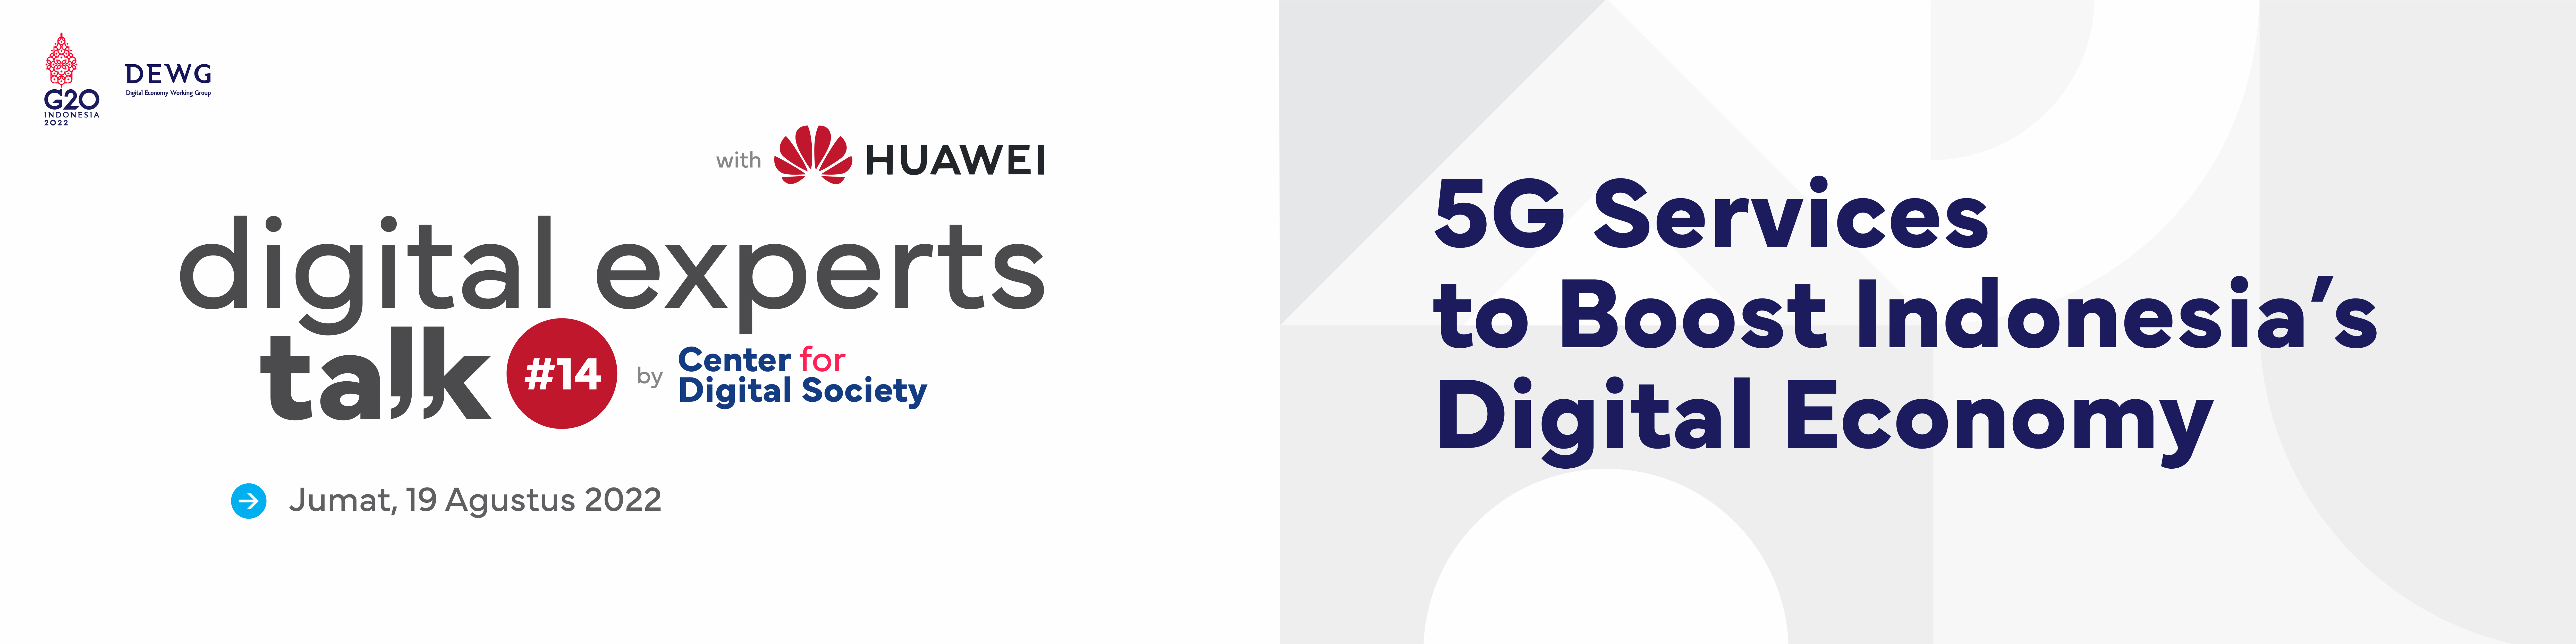 [SIARAN PERS] Huawei Indonesia, CfDS UGM, Kominfo & APJII Tanggapi Infrastruktur 5G untuk Digital Ekonomi Indonesia | DET #14